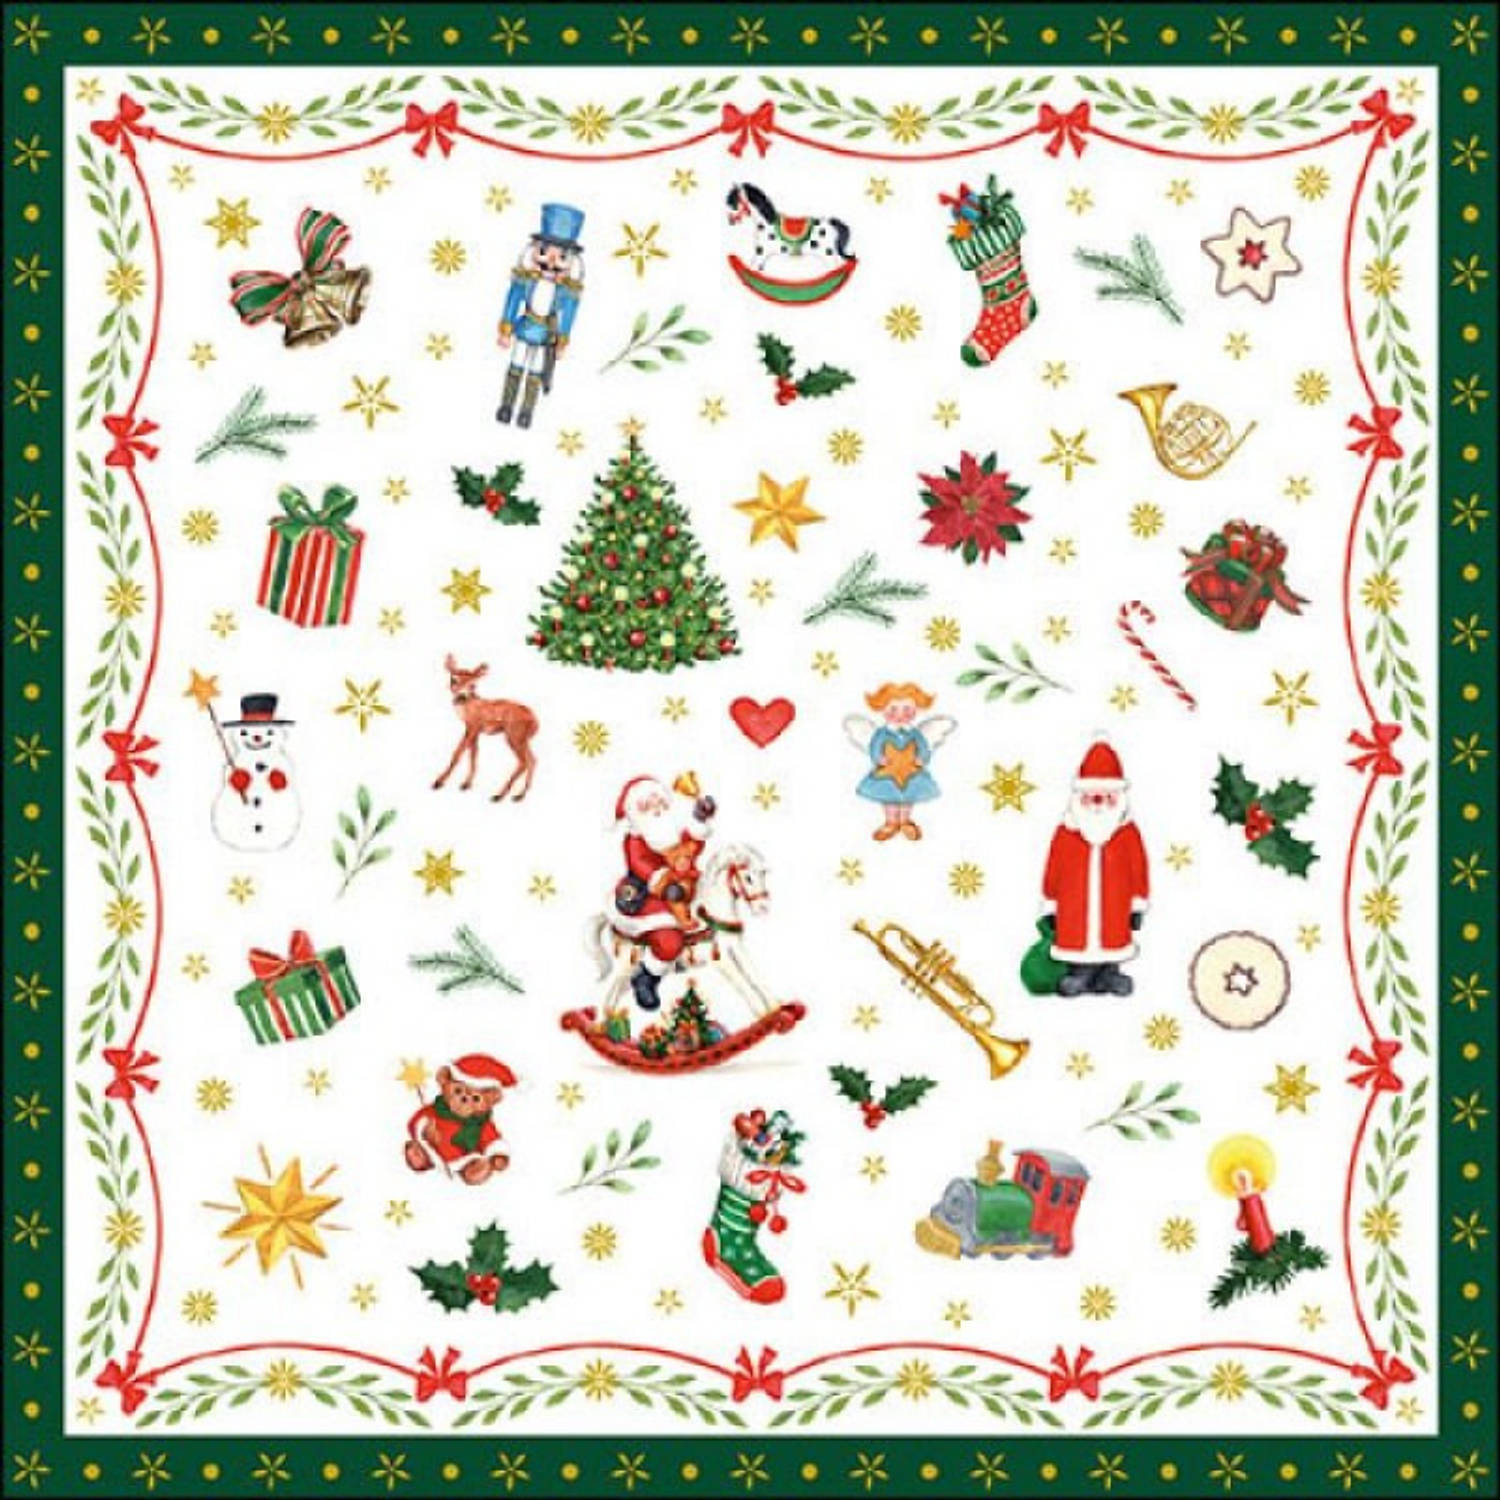 40x stuks kerstdiner-kerst thema servetten met kerstfiguren 33 x 33 cm groen Feestservetten